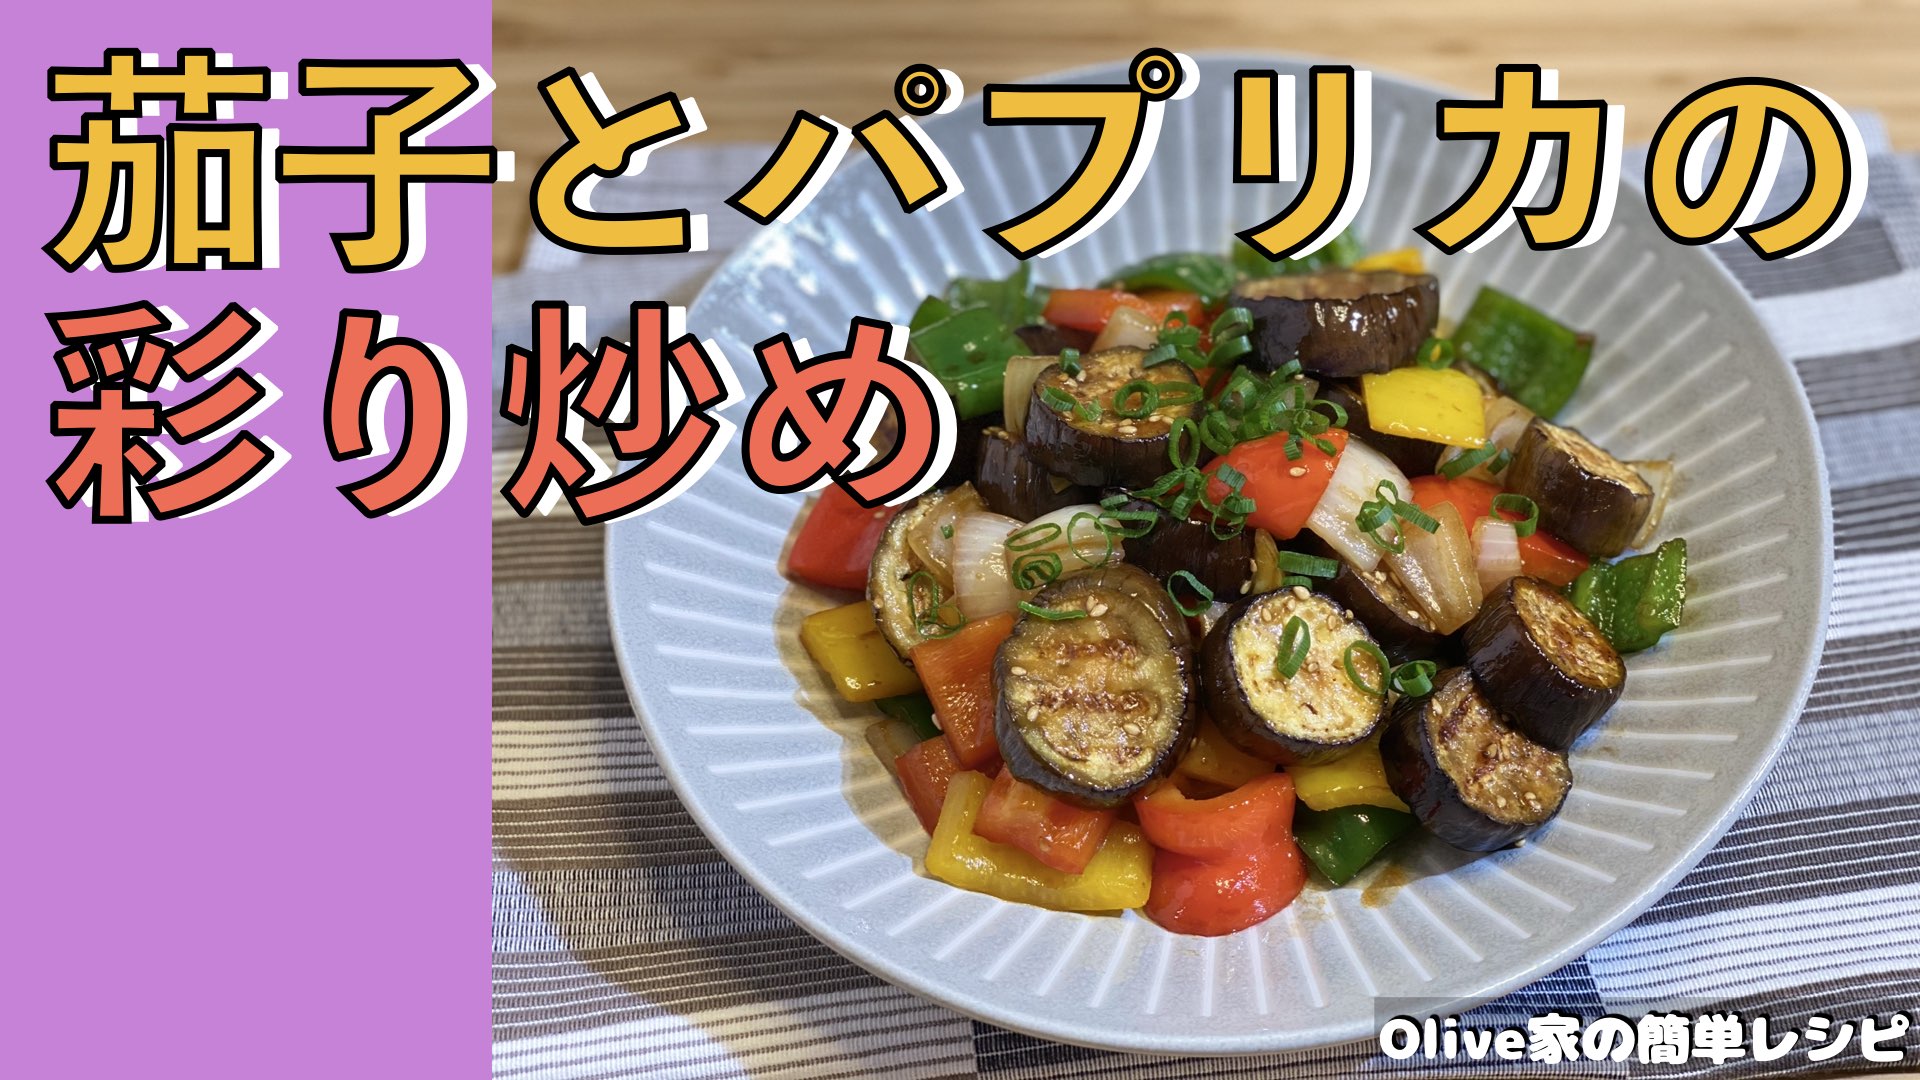 Olive家の簡単レシピ | 噛み応えよし👍 | 彩り鮮やかな茄子とパプリカの彩り炒め🍆🫑